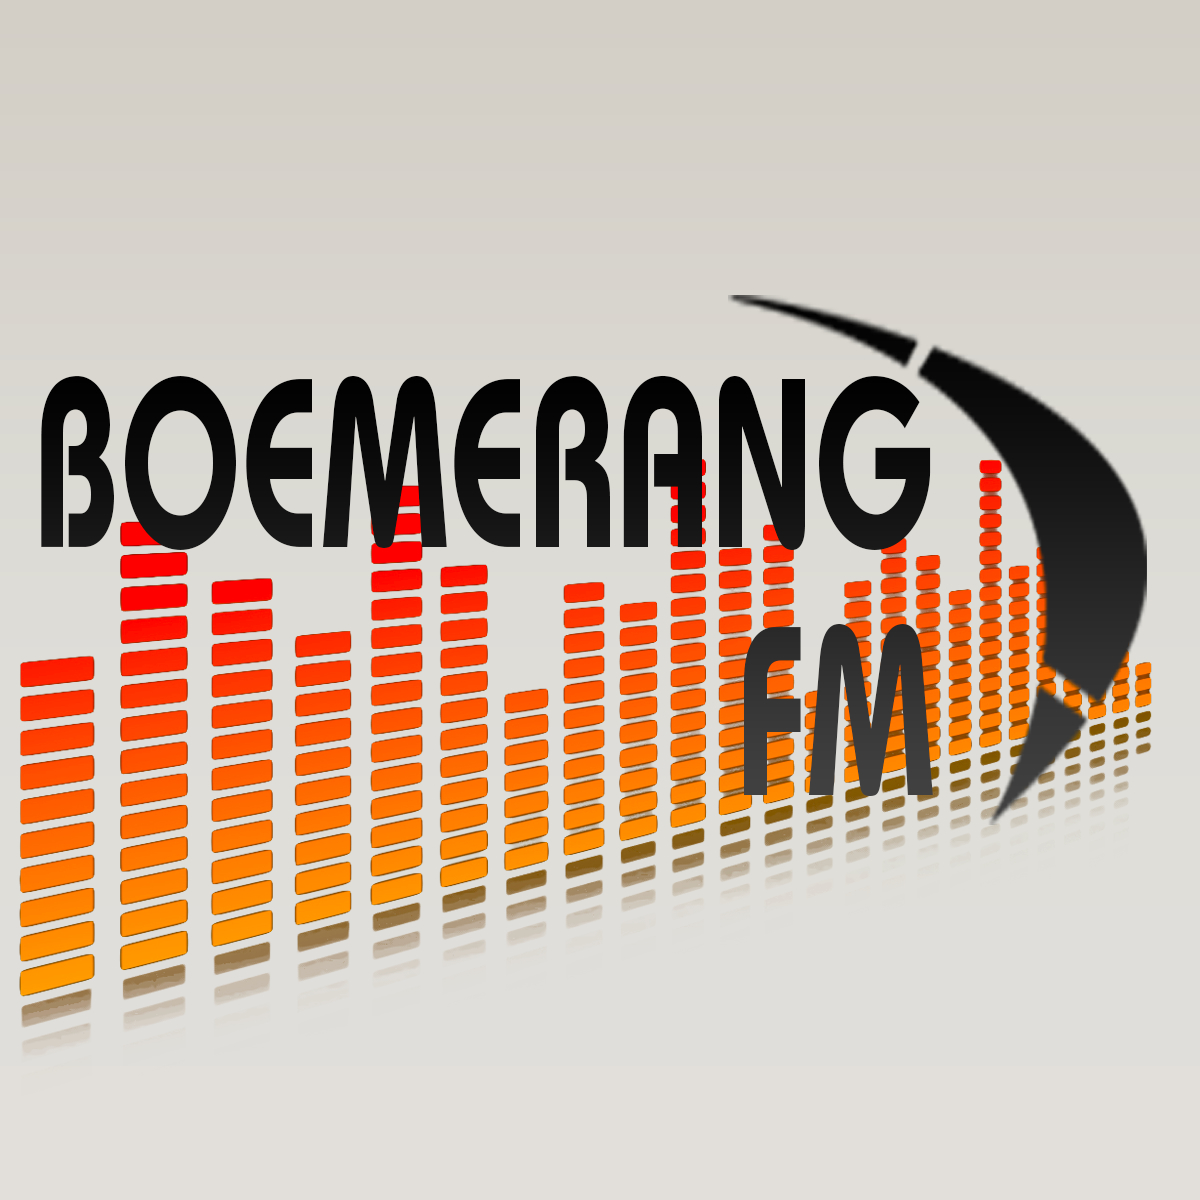 BoemerangFM | Non-stop de gezelligste!